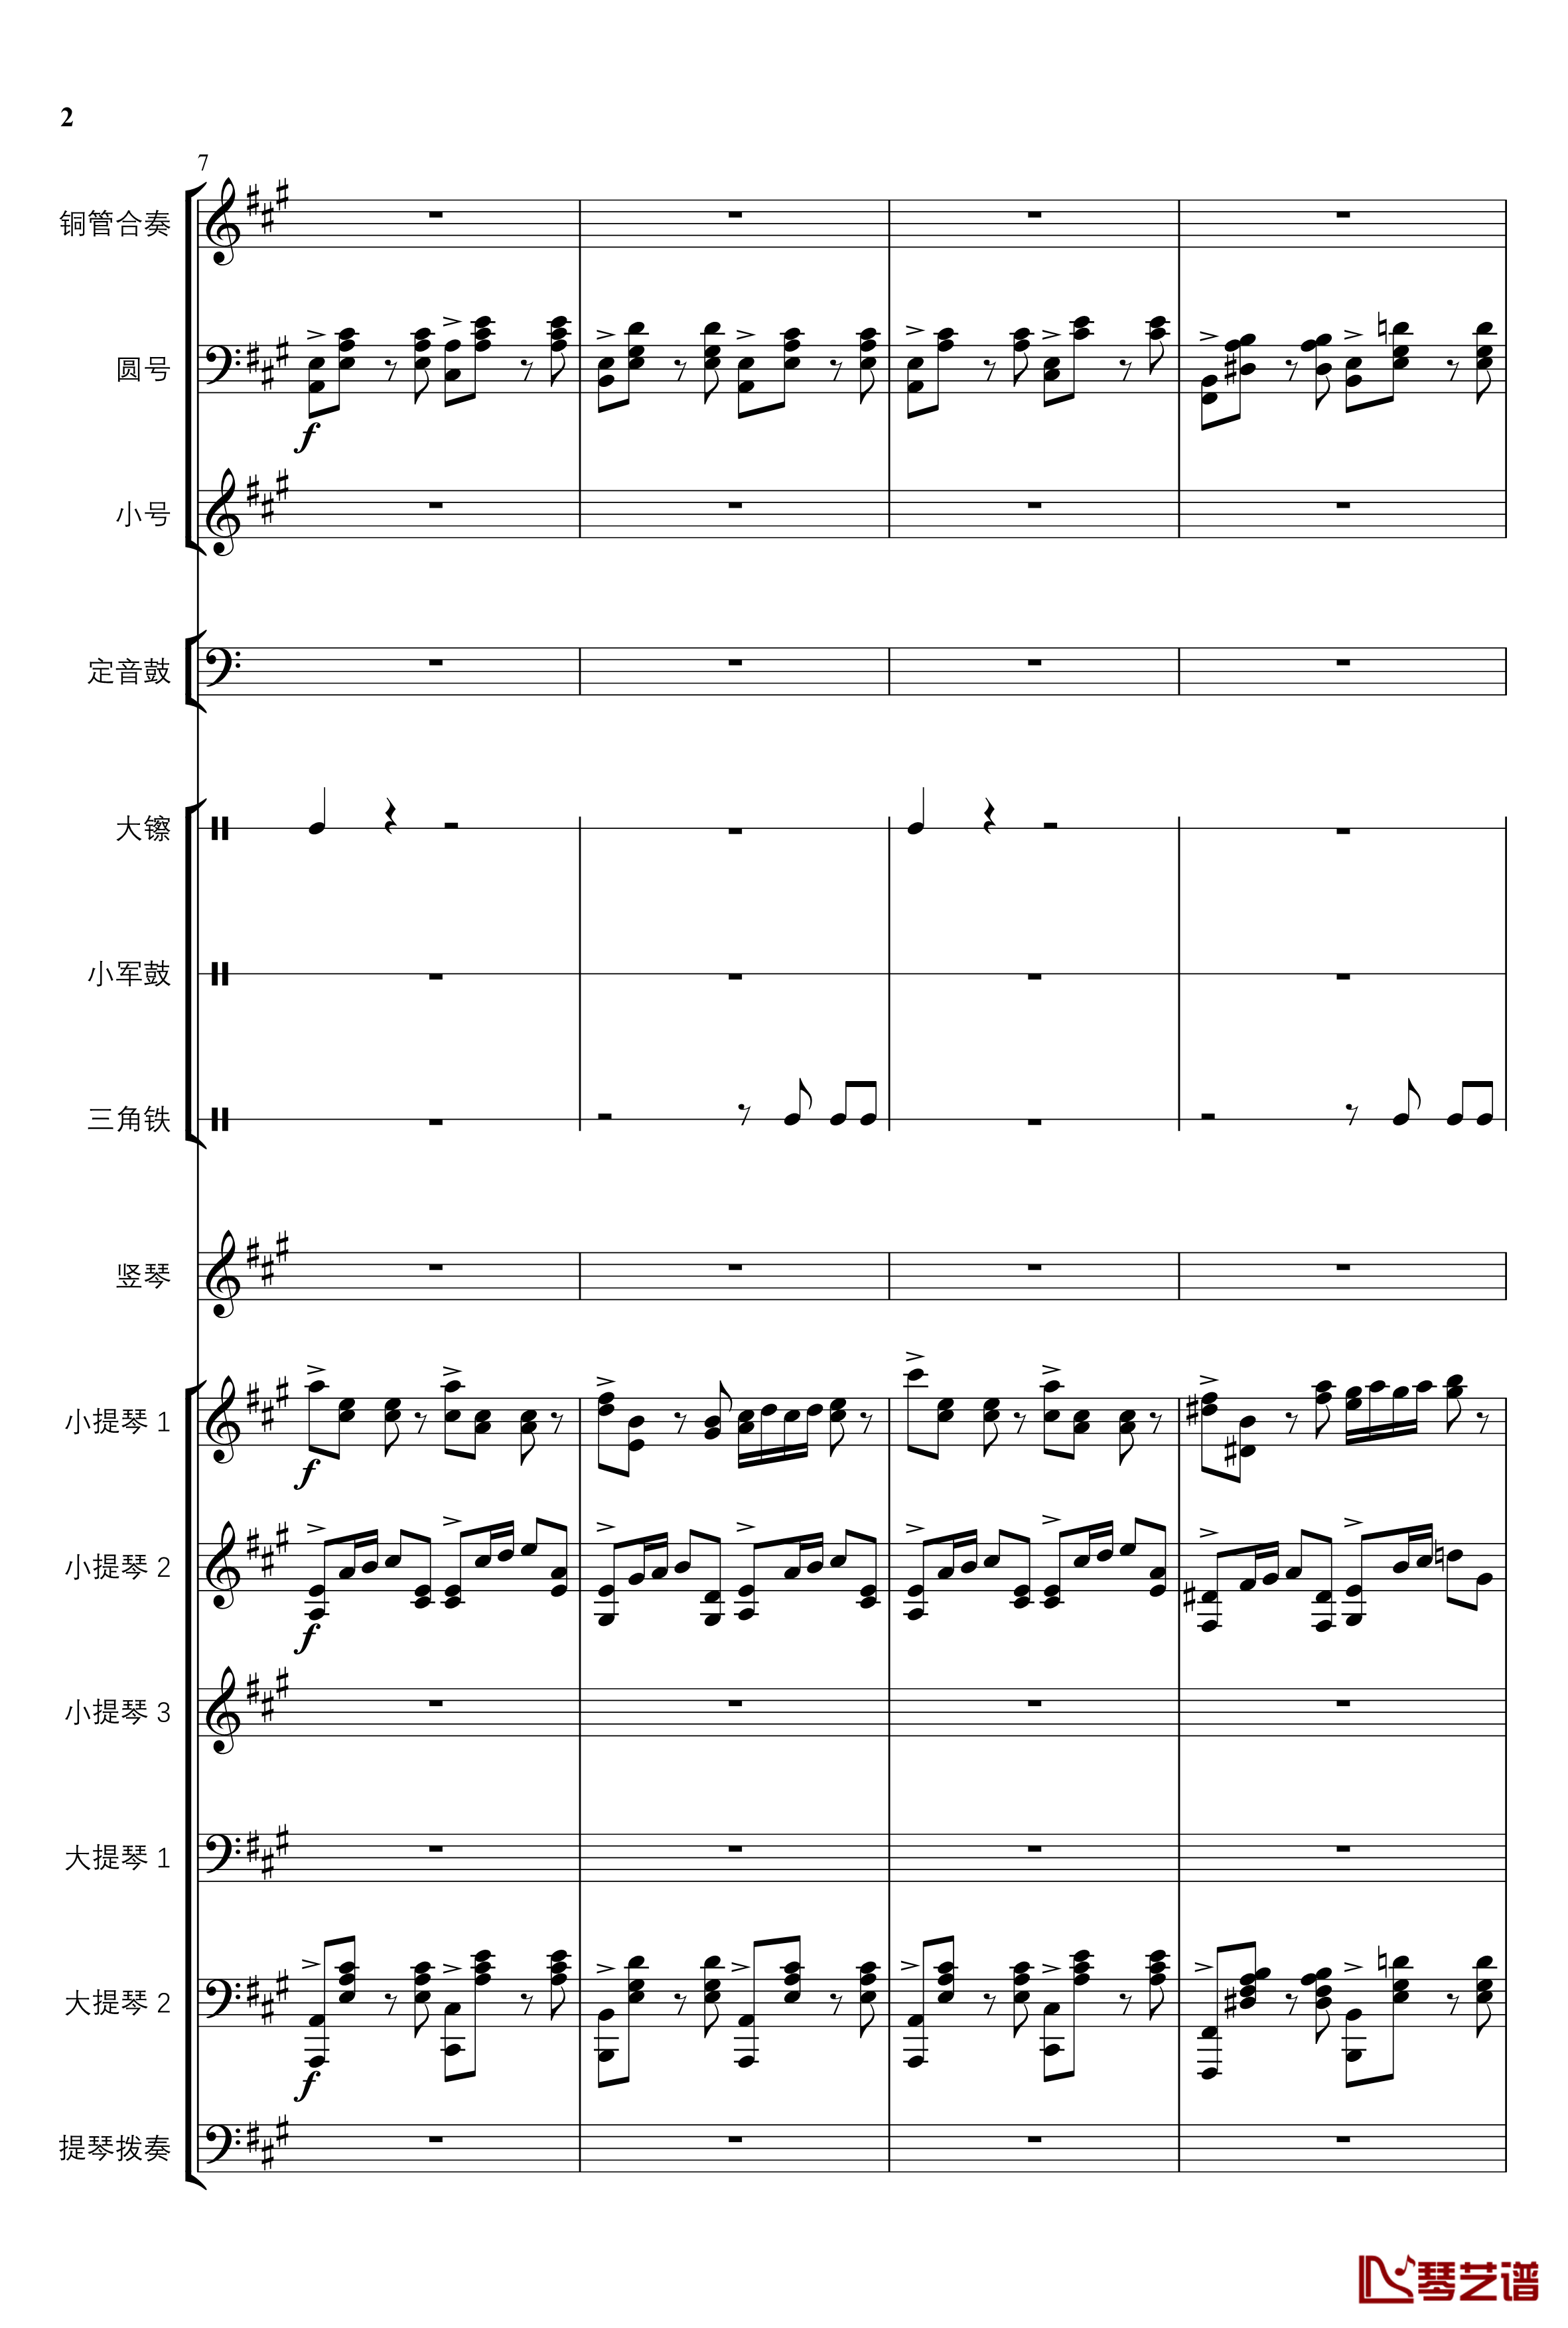 2013考试周的叙事曲钢琴谱-管弦乐重编曲版-江畔新绿2